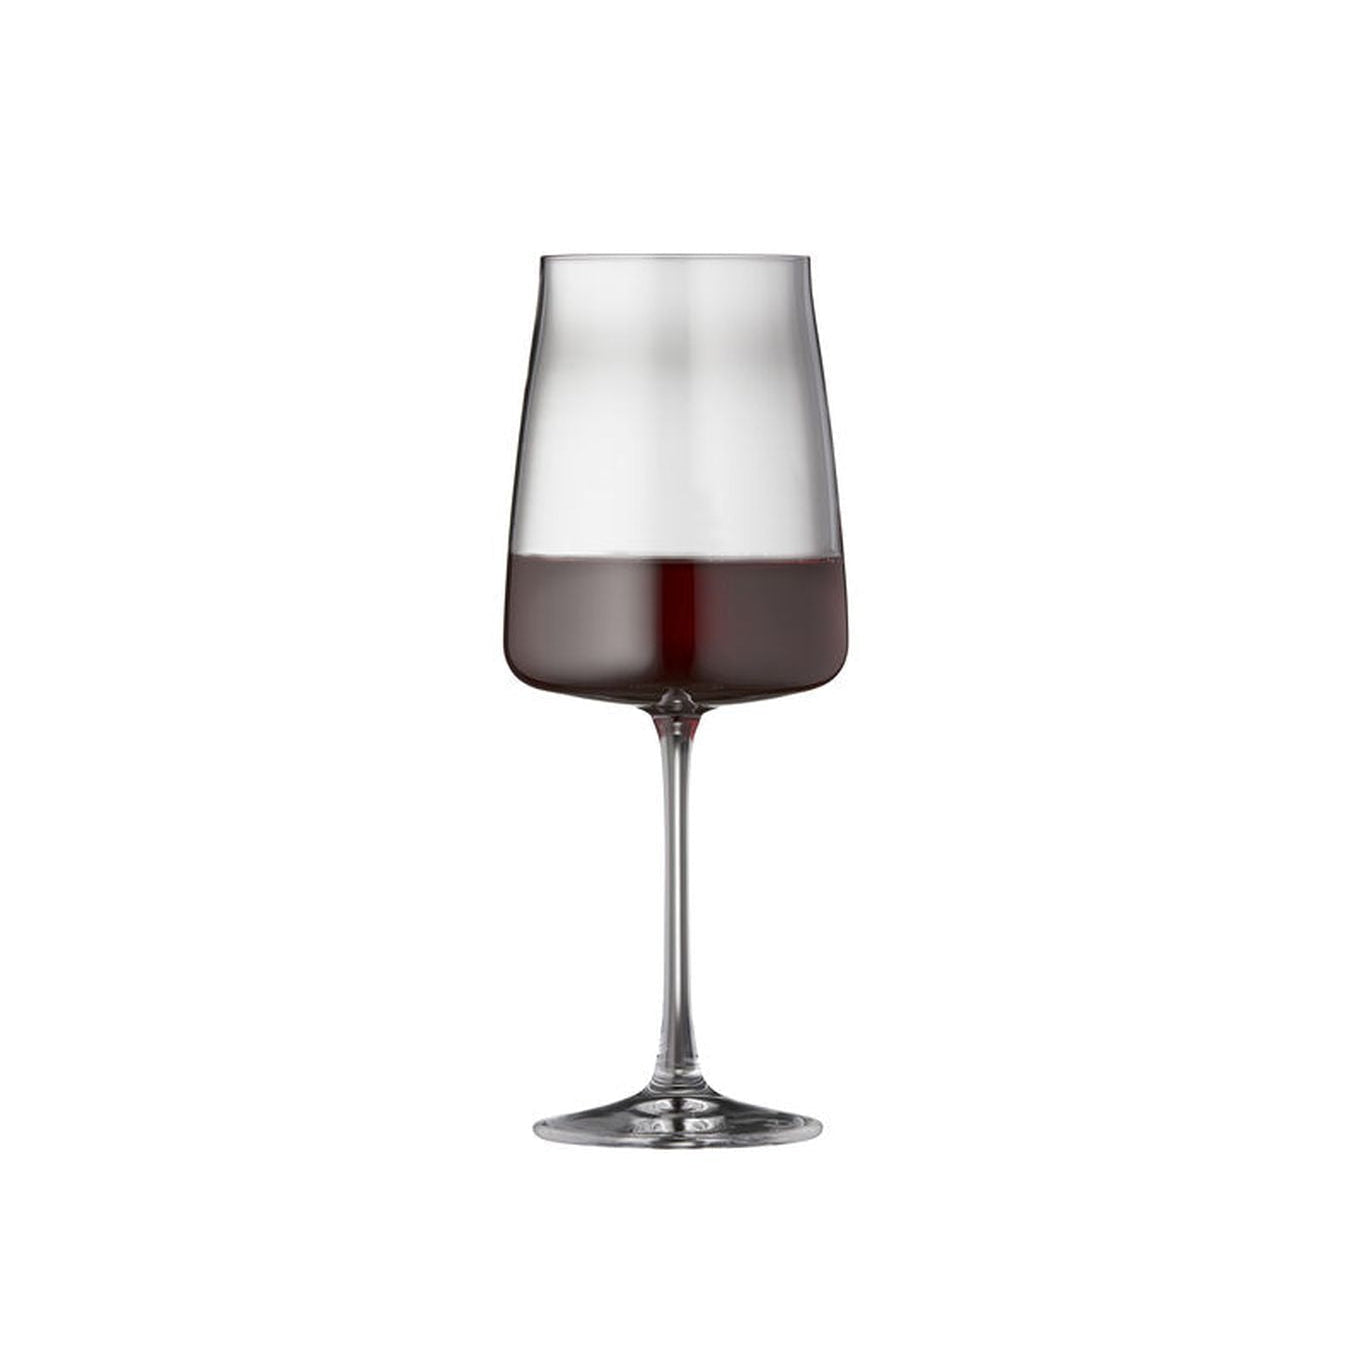 Lyngby Glas cero copa de vino tinto Krystal 54 CL, 4 PC.